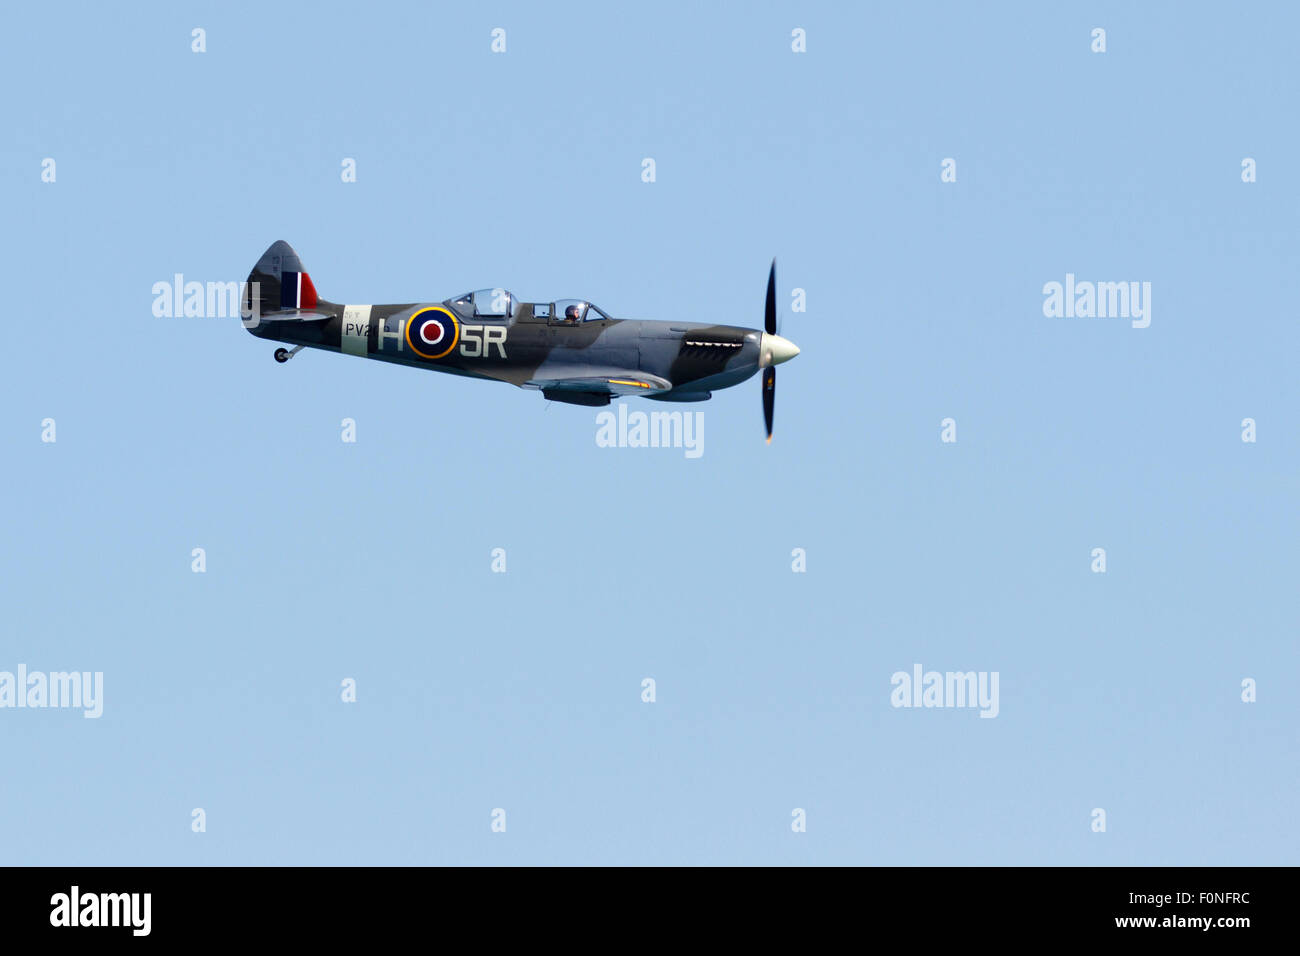 Spitfire au-dessus de l'East Sussex au spectacle aérien d'Eastbourne, le 14 août 2015, England, UK Banque D'Images